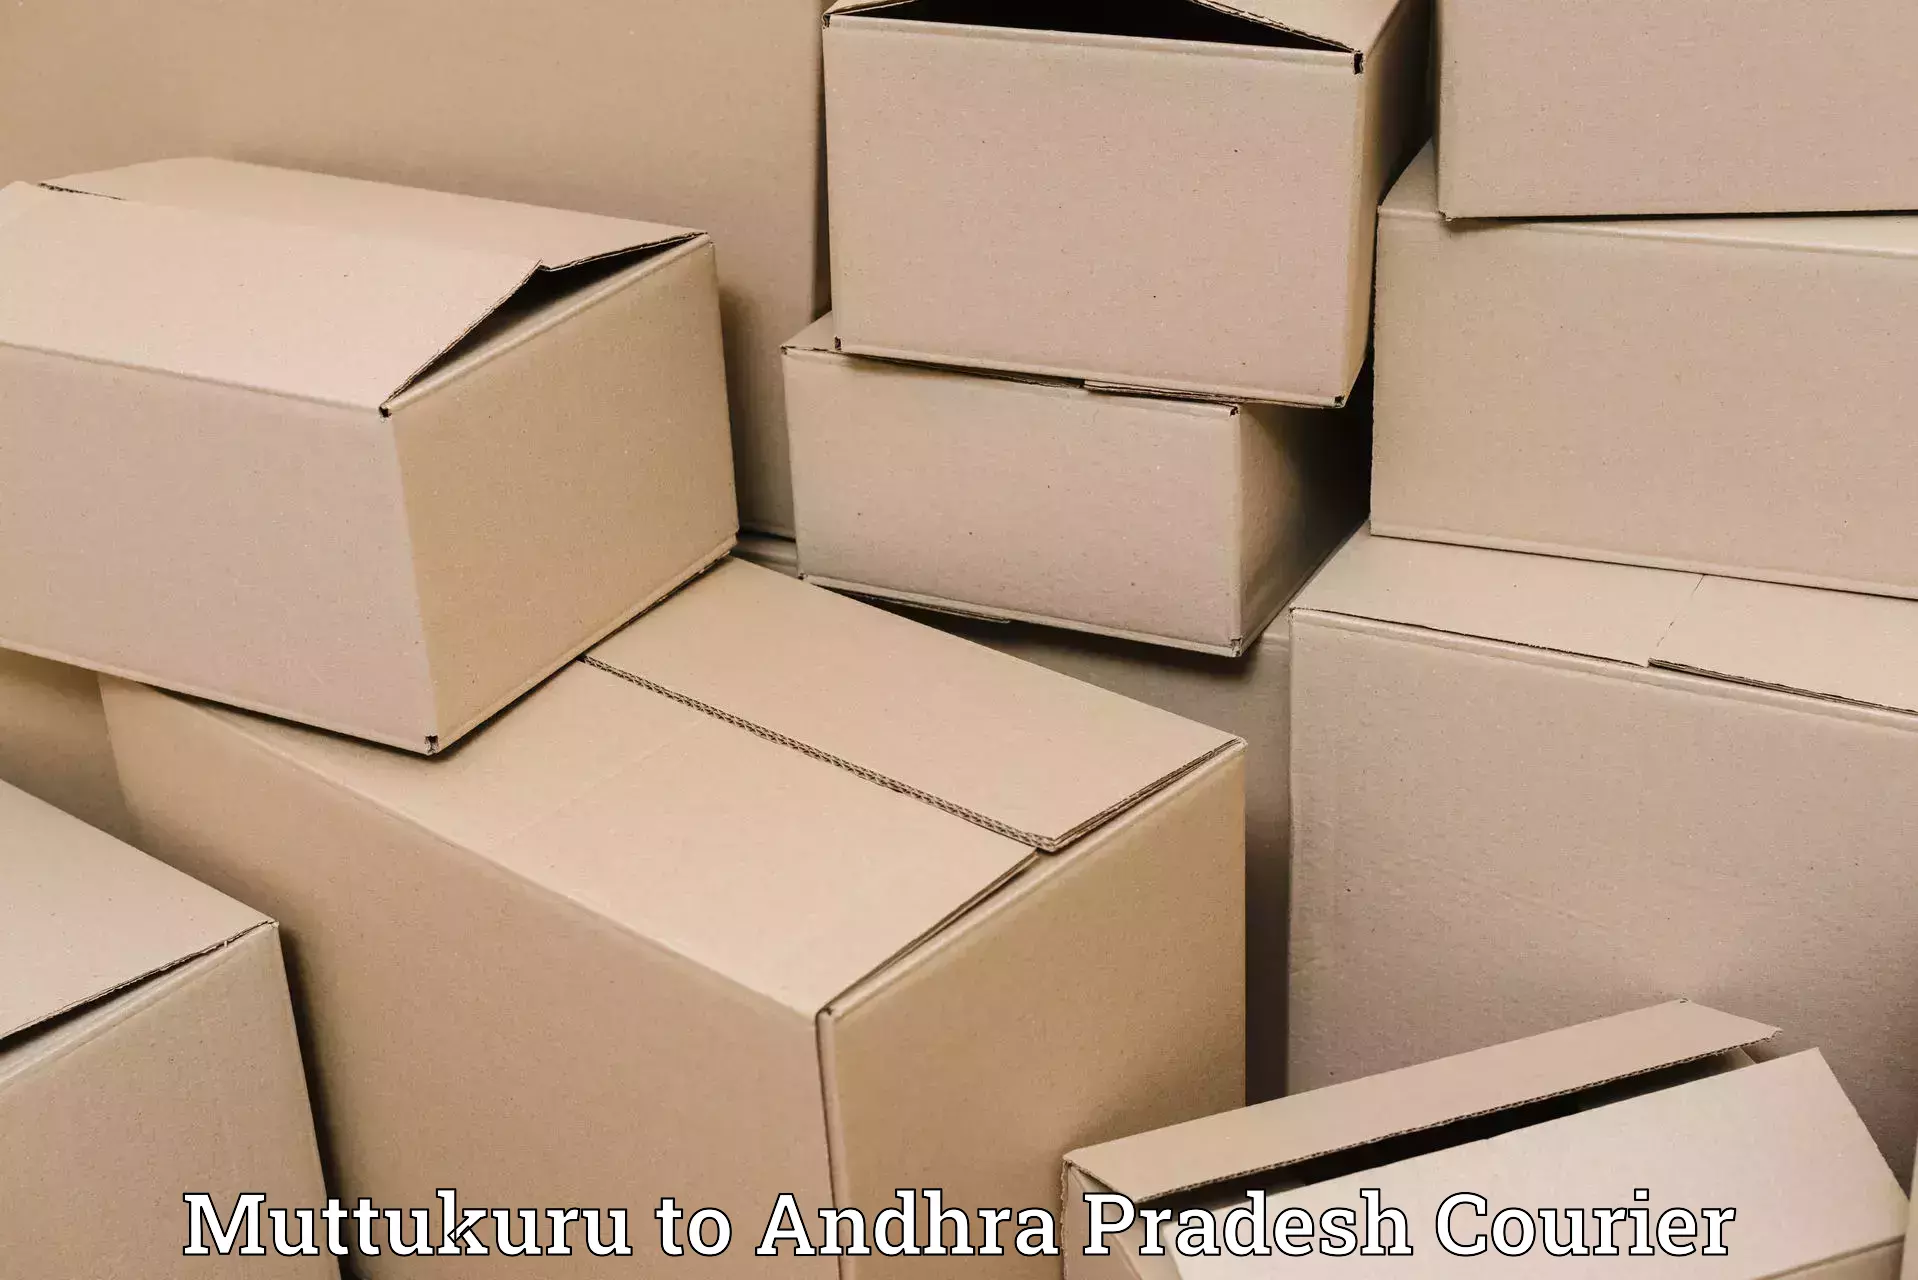 Supply chain efficiency Muttukuru to Gooty